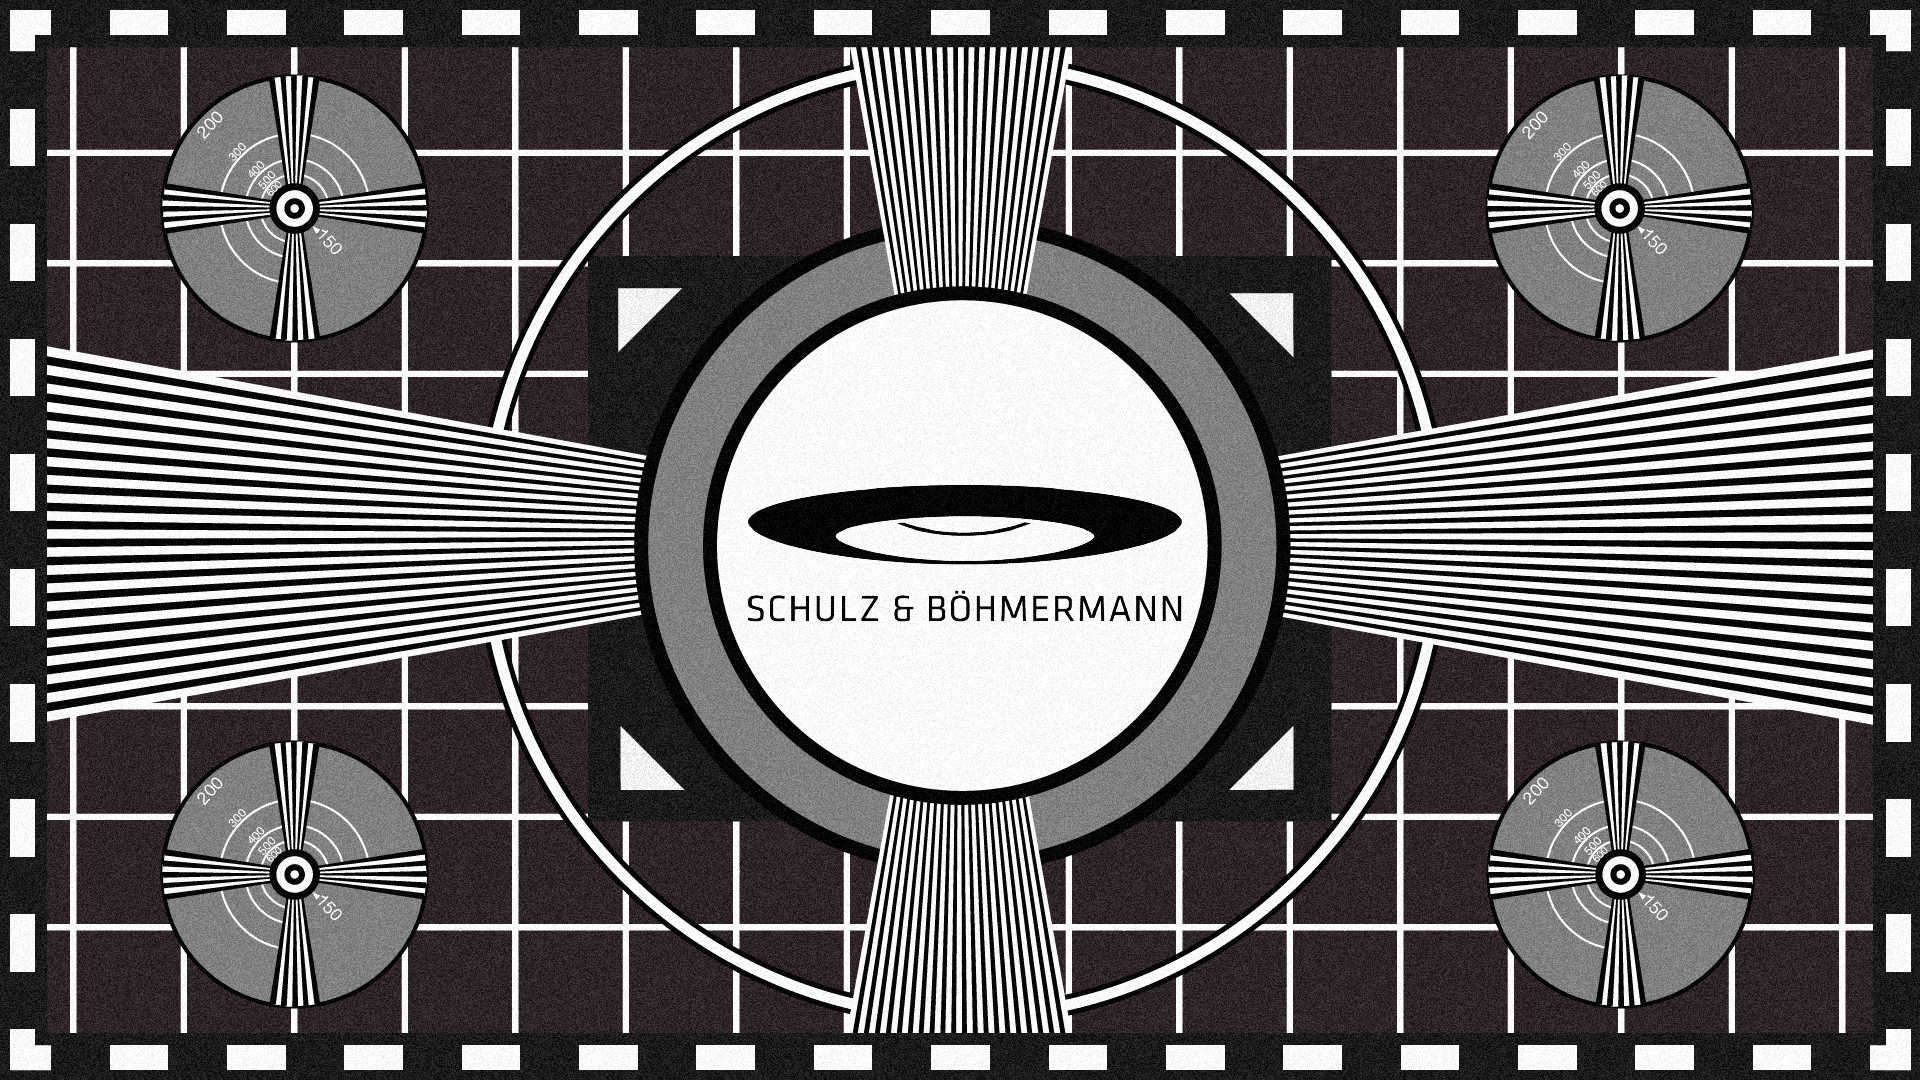 TV testimage with logo 'Schulz & Böhmermann' in the center